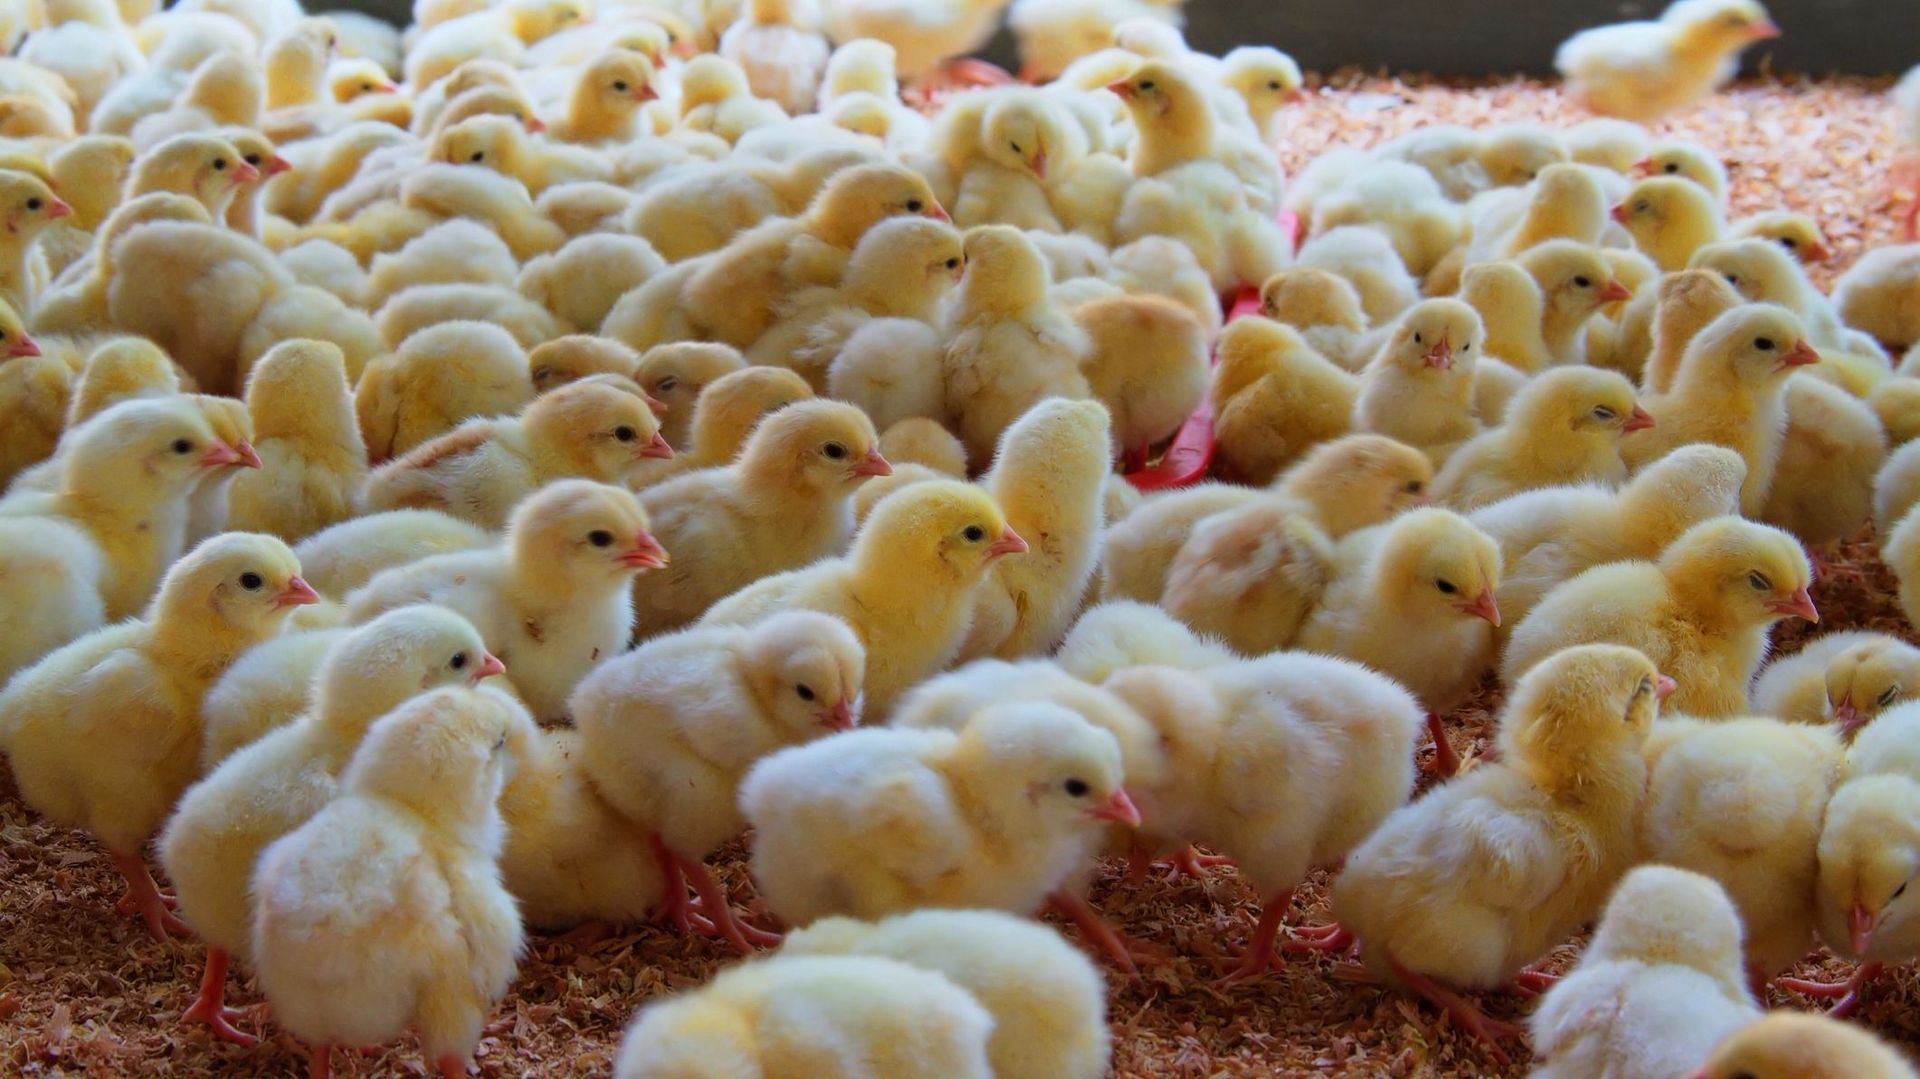 pays-bas-200000-poussins-abattus-pour-endiguer-la-grippe-aviaire